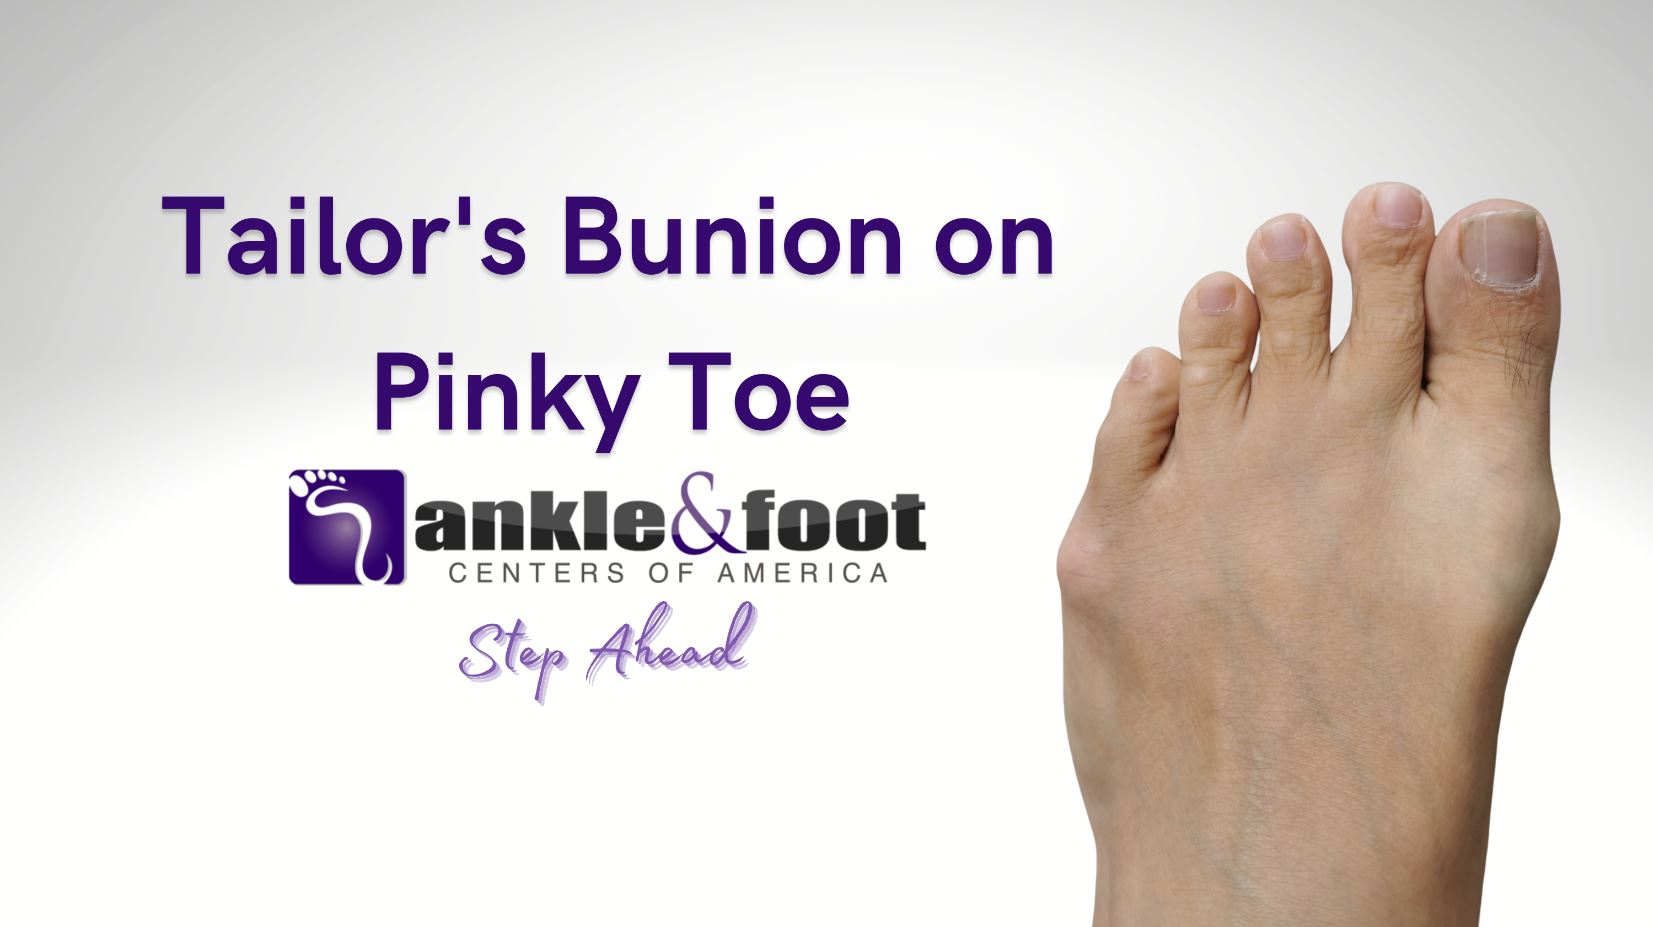 Tailors Bunion on Pinky Toe